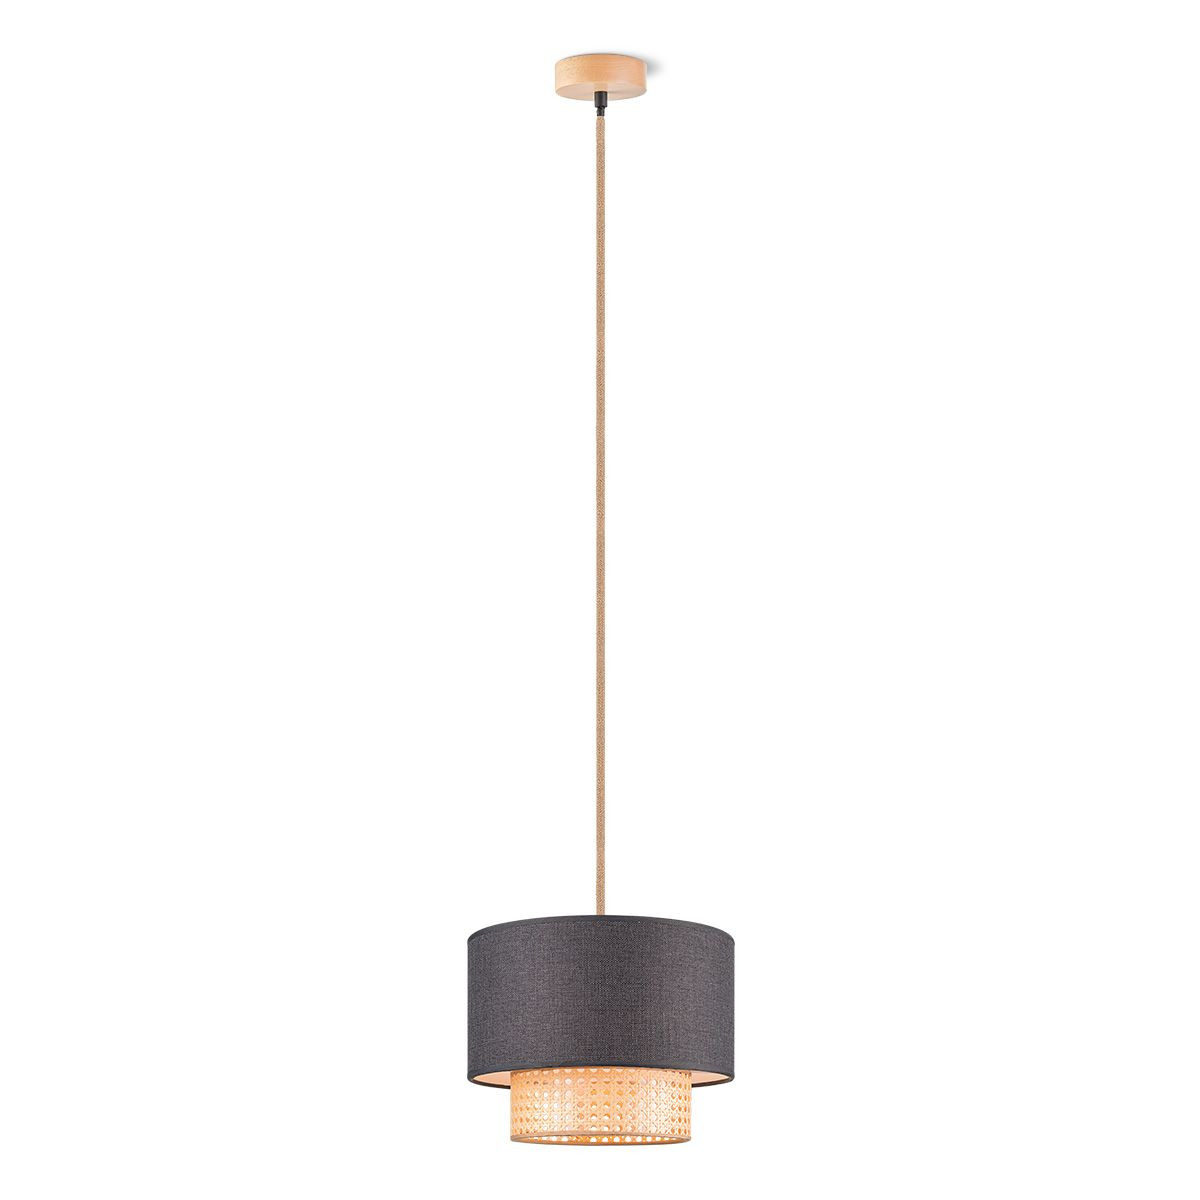 Light depot - hanglamp cane weave - linnen / zwart - Outlet